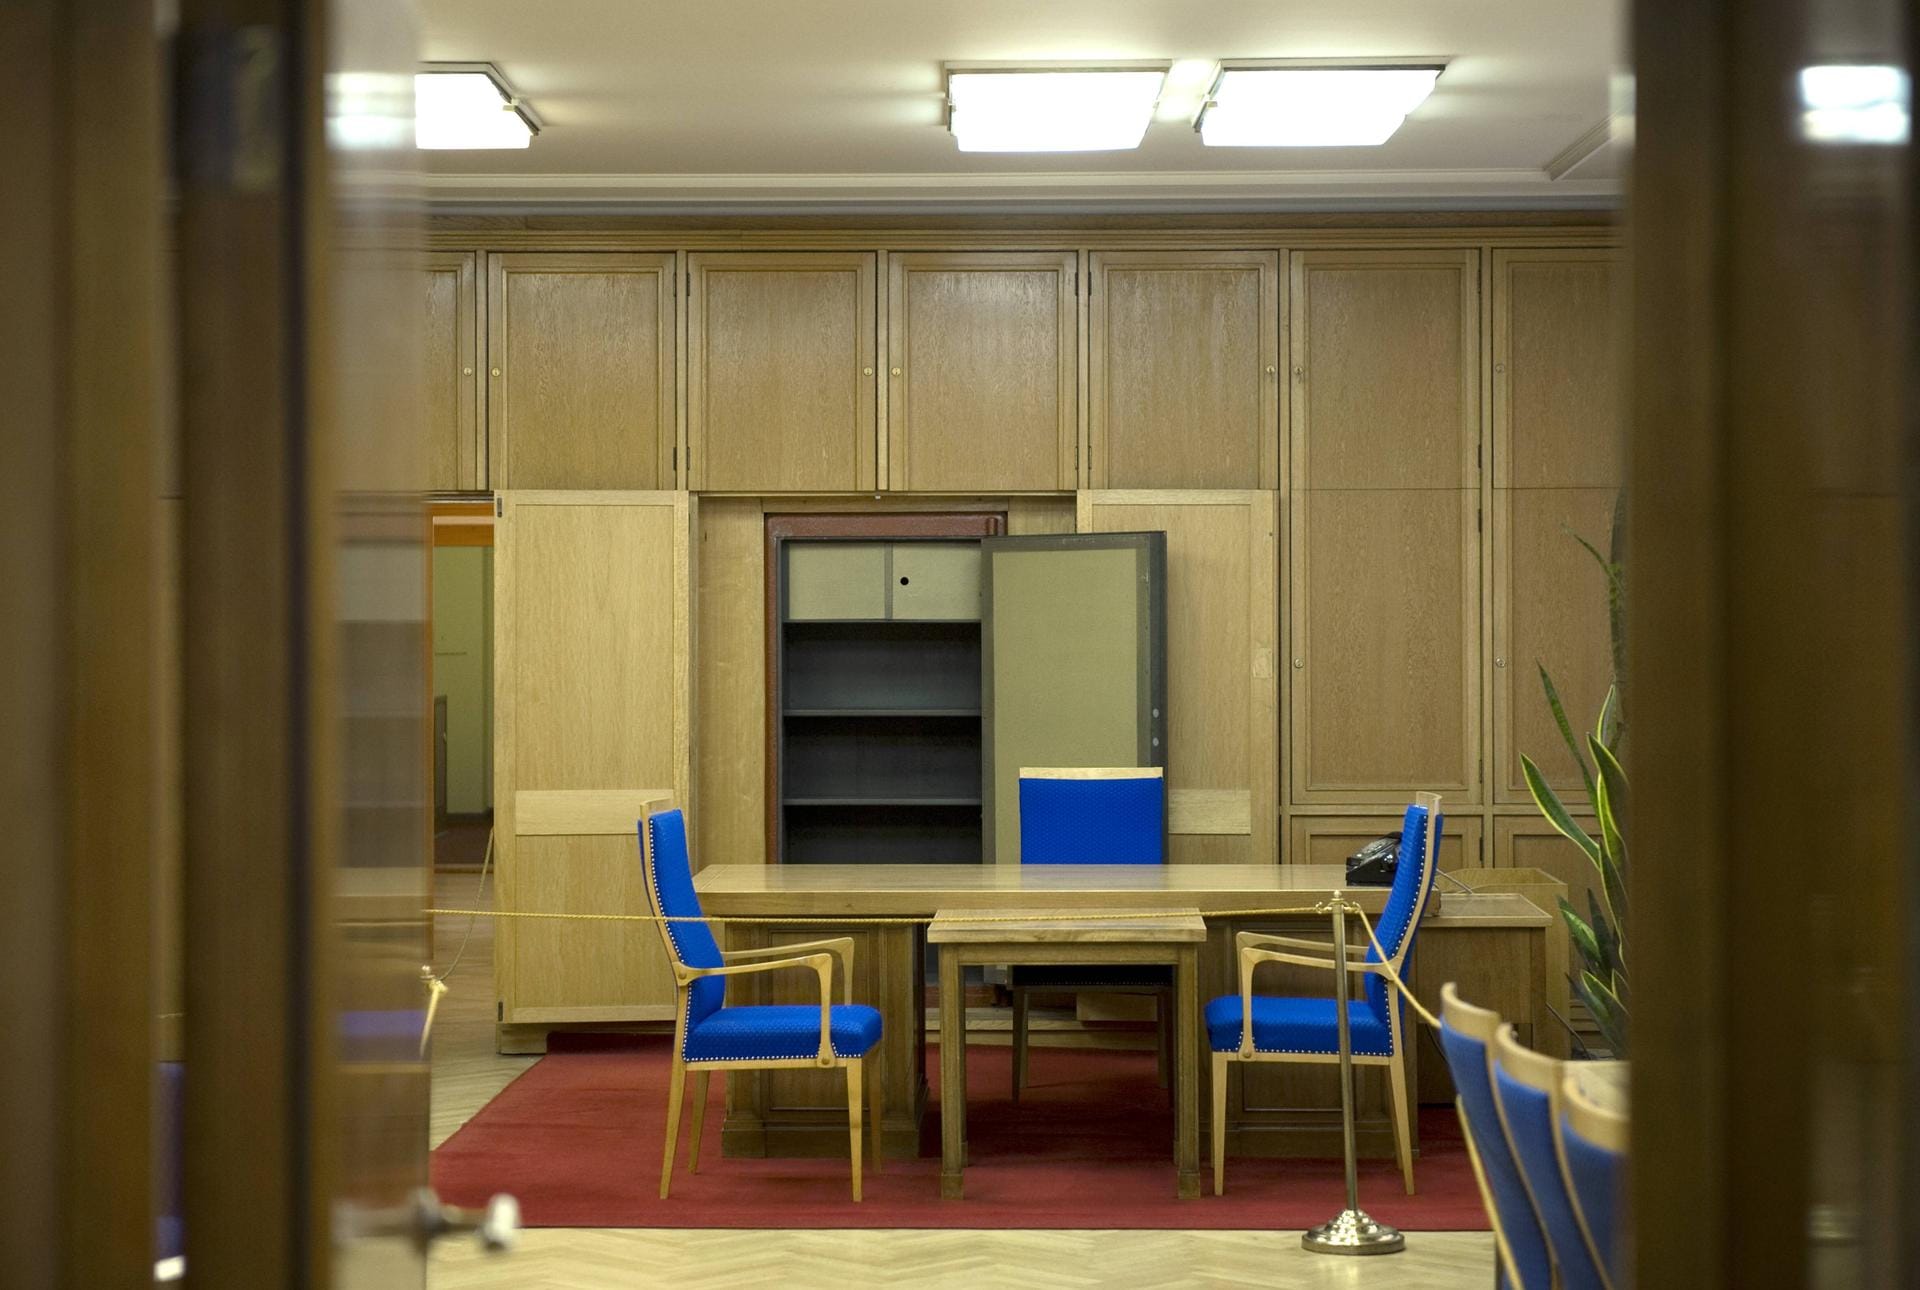 Das Büro von Erich Mielke, dem Minister für Staatssicherheit: Es kann heute im Stasimuseum in Lichtenberg besichtigt werden.